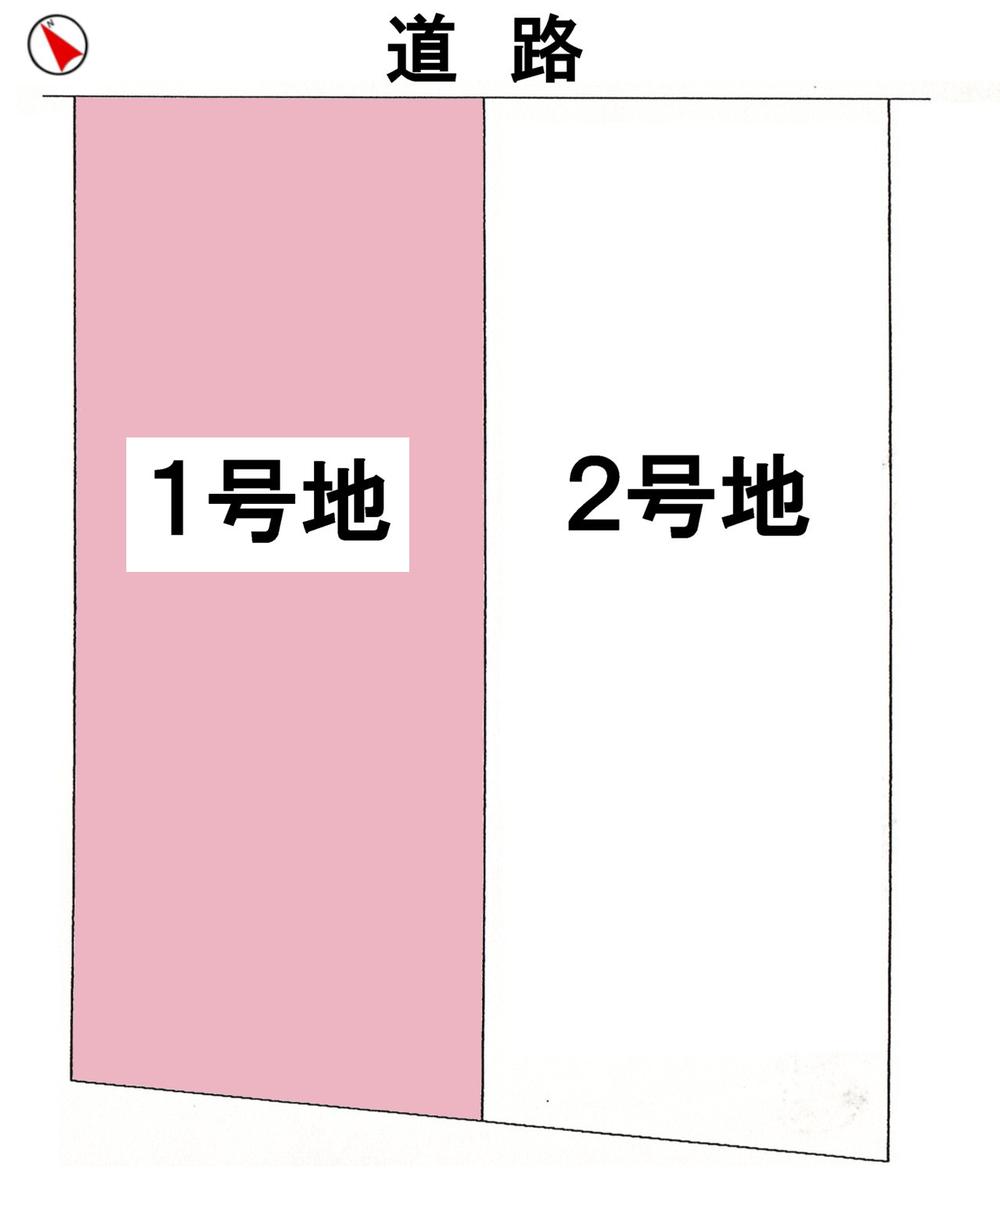 Compartment figure. 27.3 million yen, 4LDK, Land area 120.66 sq m , Building area 96.96 sq m